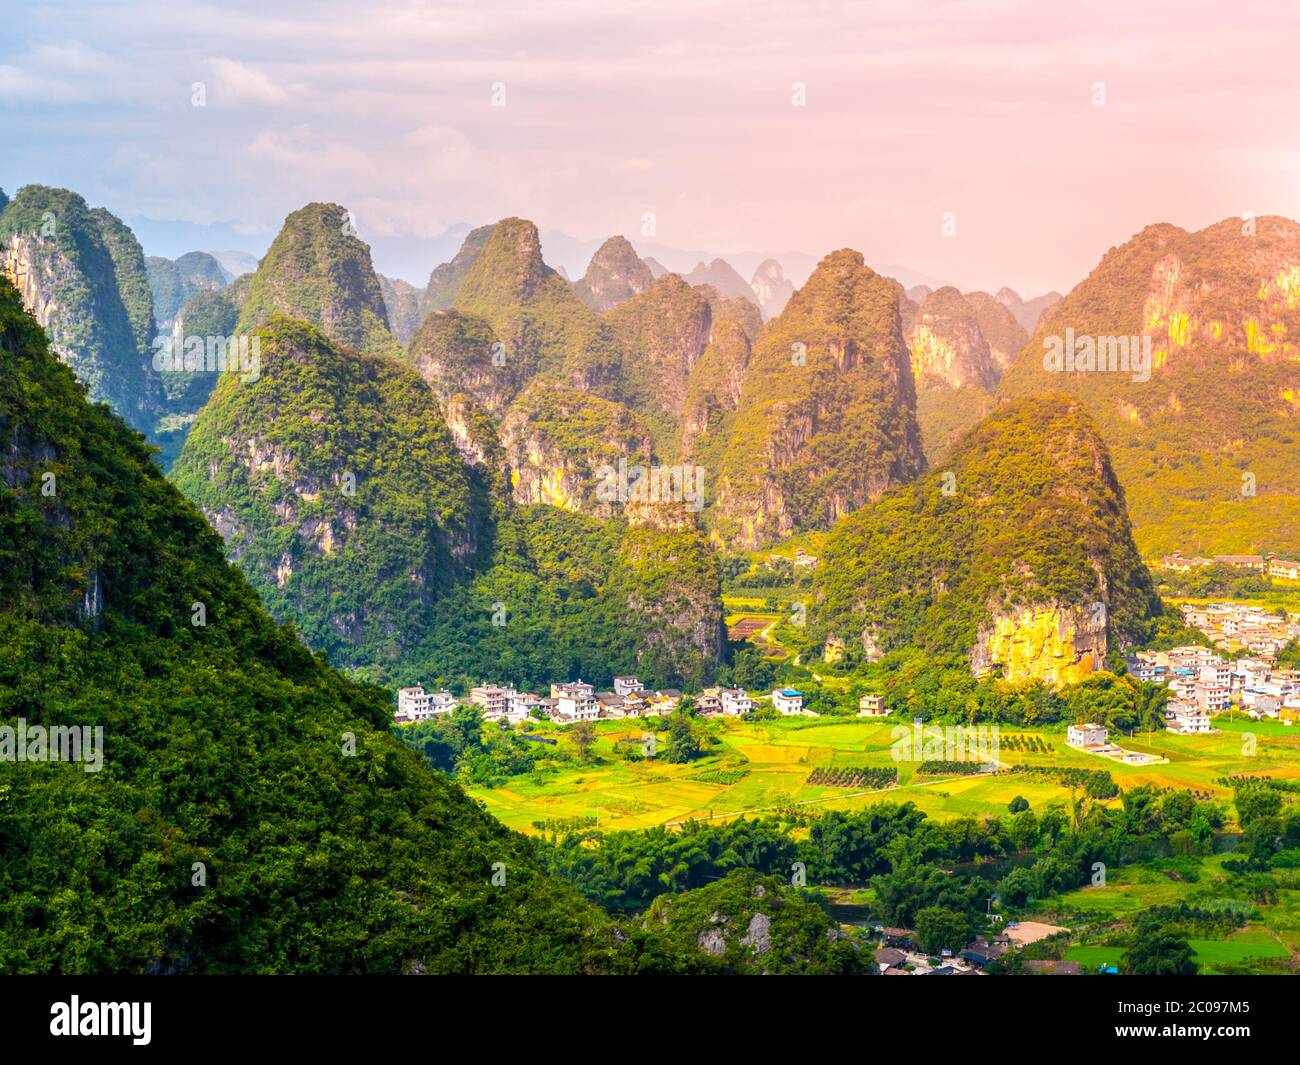 Vue panoramique sur le paysage avec les pics karstiques autour du comté de Yangshuo et de la rivière Li, province de Guangxi, Chine. Banque D'Images